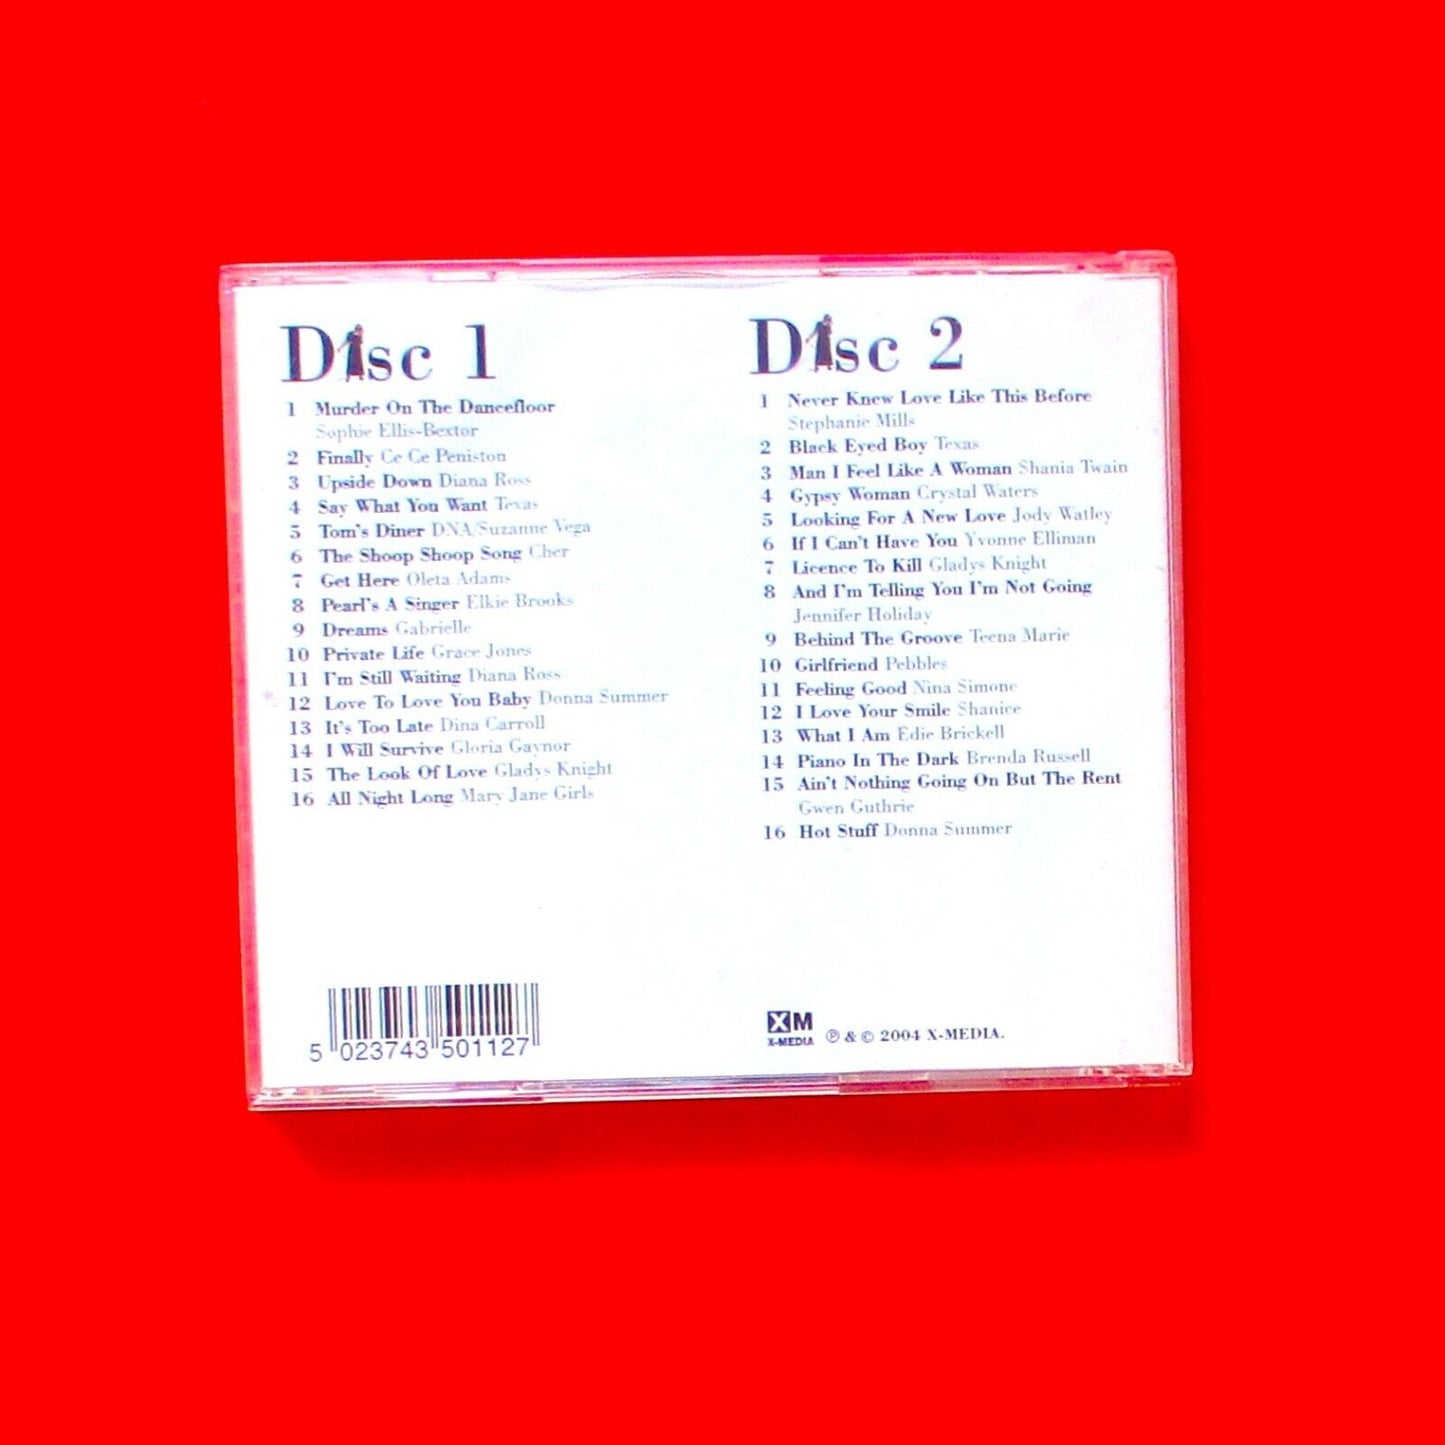 Divas 2xCD Compilation Album Cher Sophie Ellis-Bextor Diana Ross 2004 UK